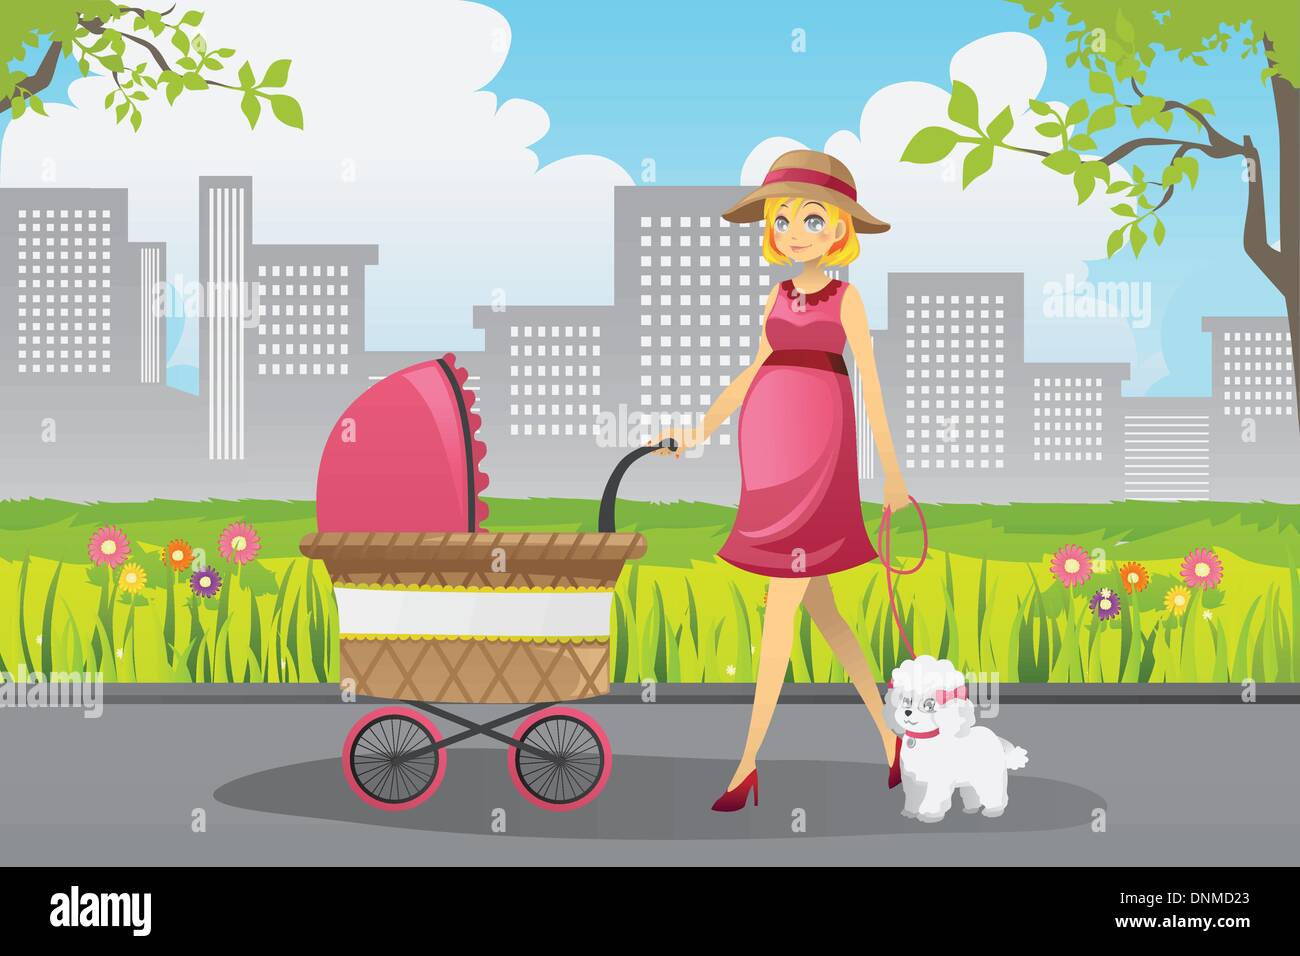 Un vecteur illustration d'une belle femme enceinte poussant une poussette à marcher avec son chien dans un parc Illustration de Vecteur